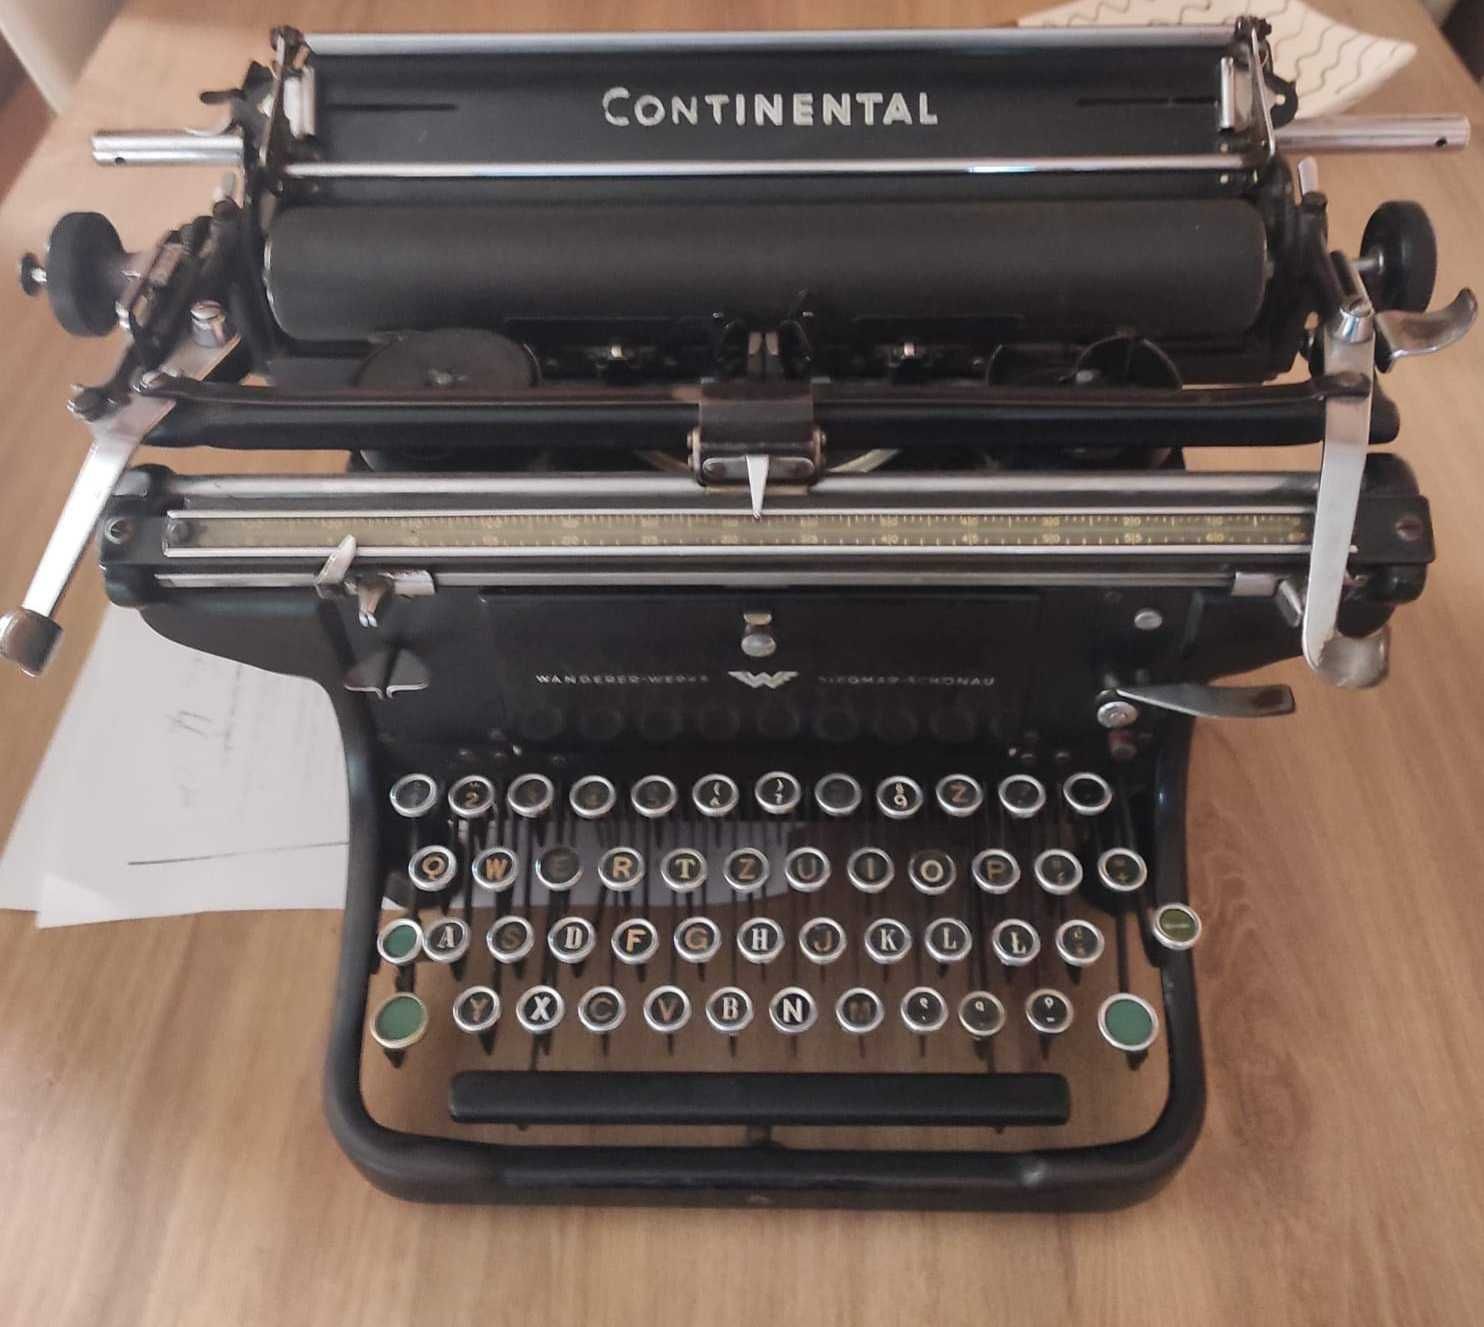 Maszyn do pisania Continental